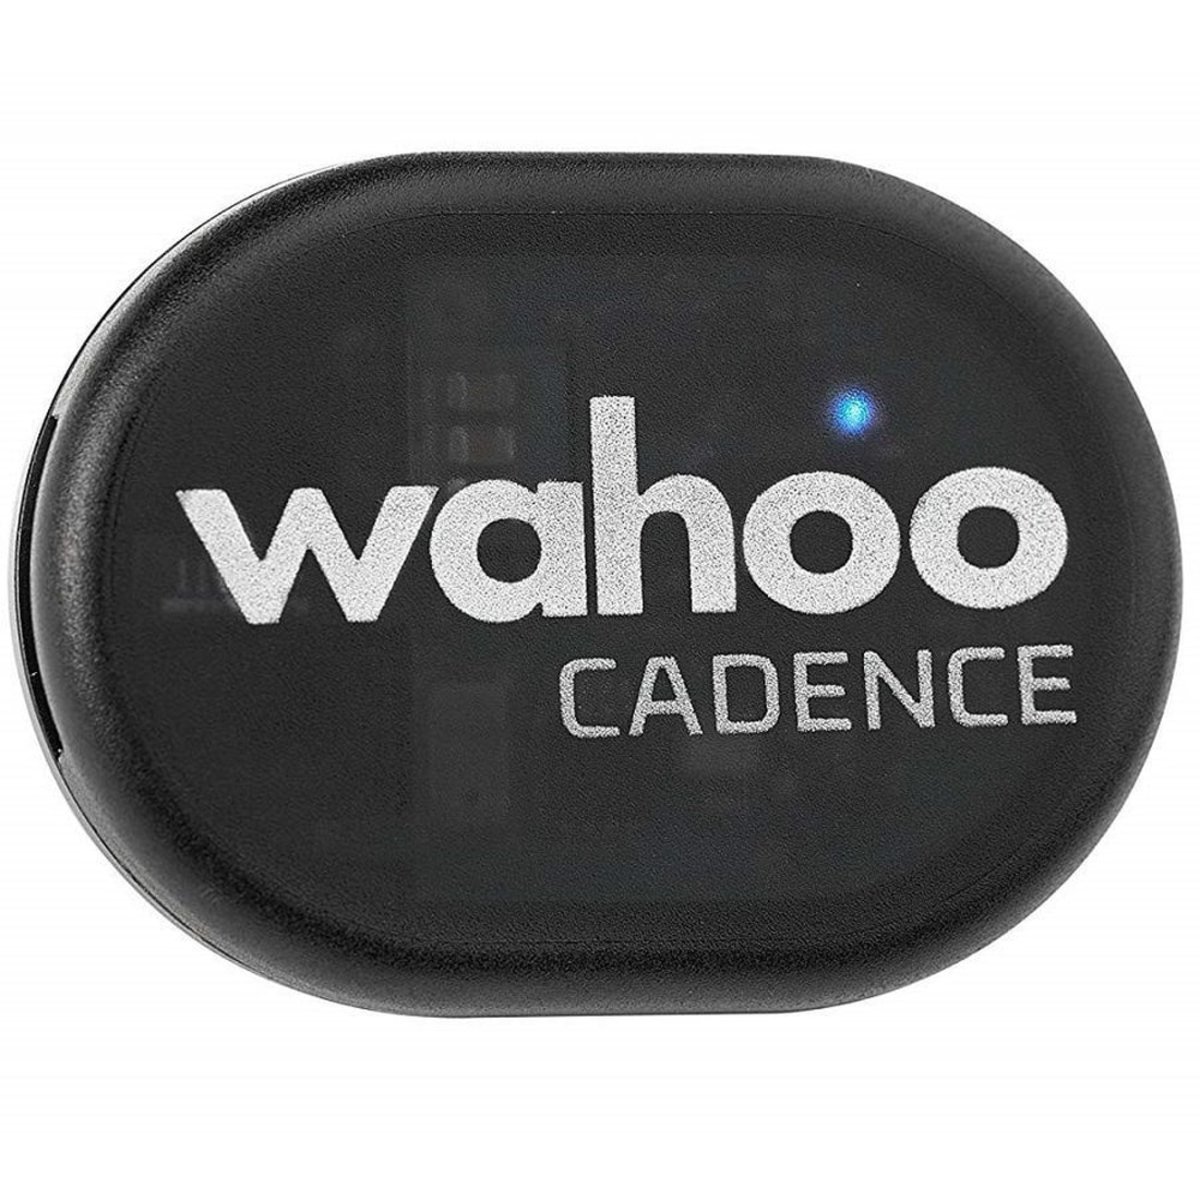 Датчик каденса Wahoo RPM Cadence Sensor (BT/ANT+) WFPODCAD2